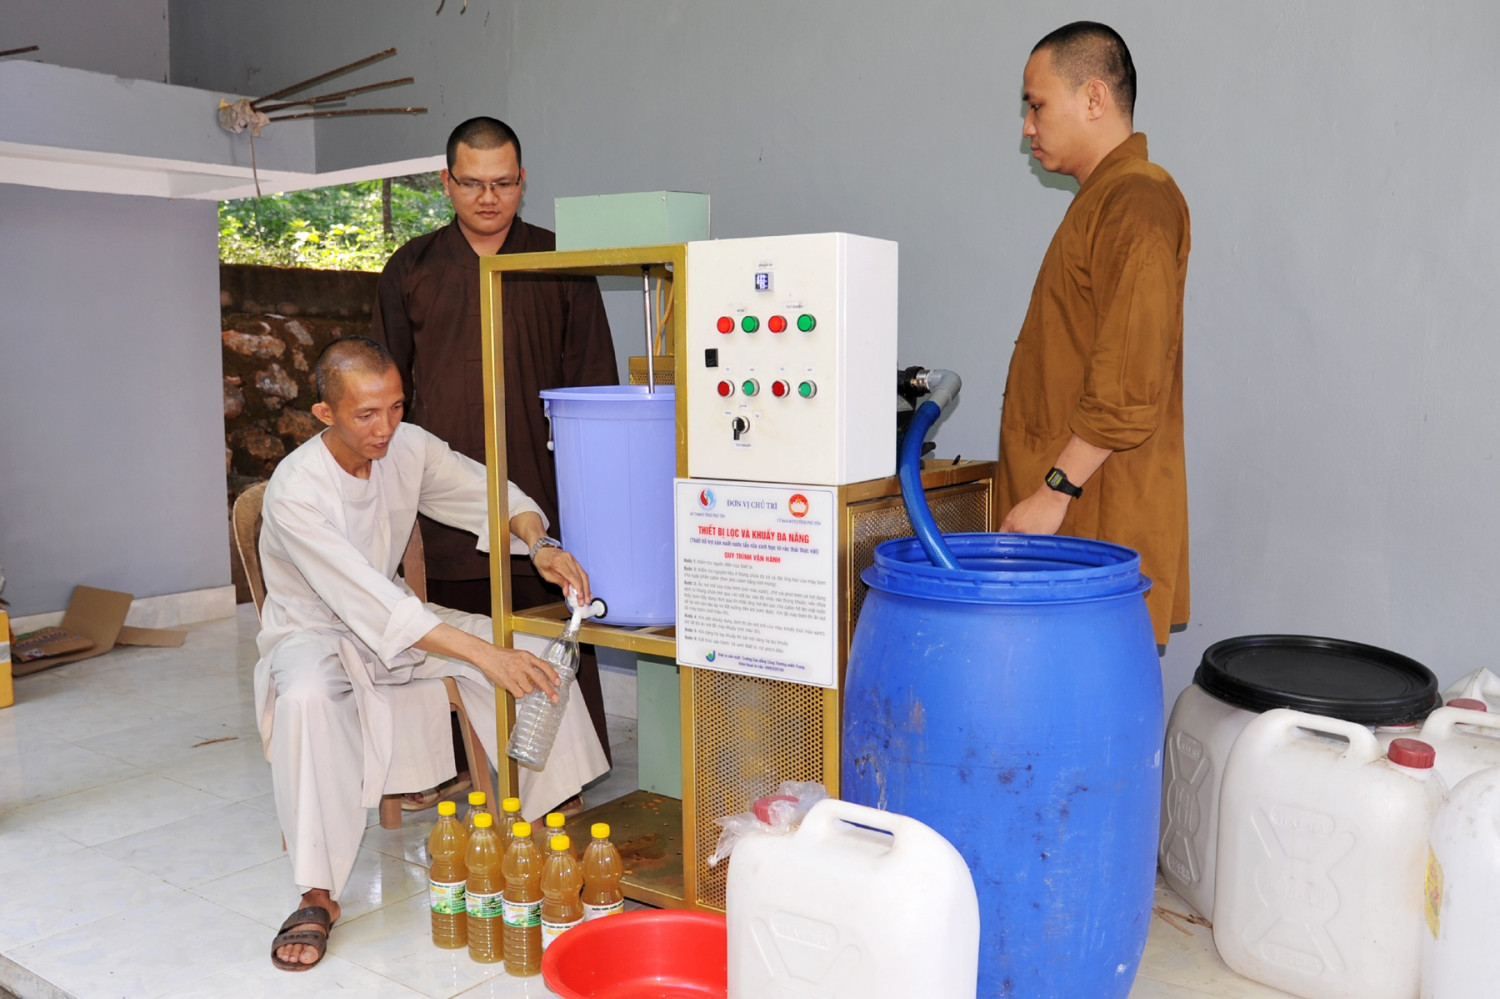 Quy trình chiết xuất nước rửa chén sinh học từ máy lọc khuấy đa năng ở chùa Bảo Lâm